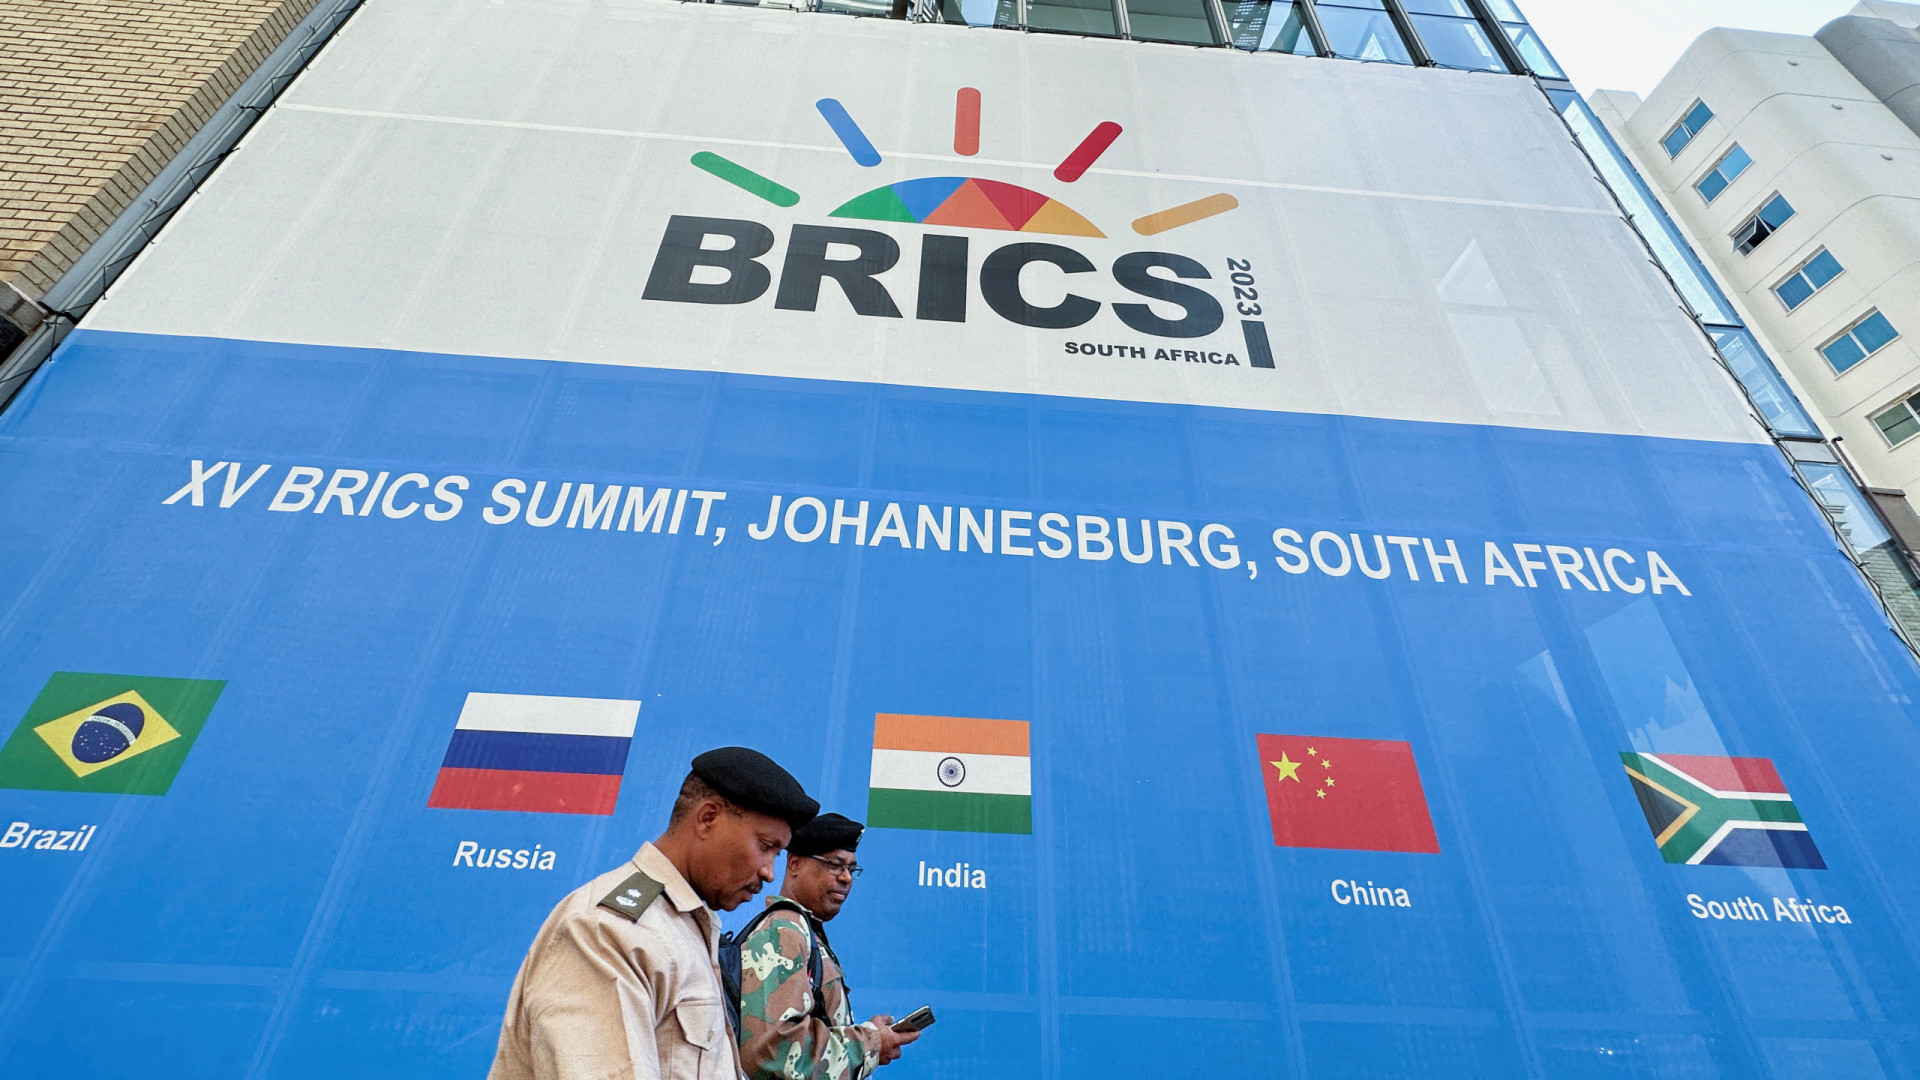 Mundo: A cimeira dos BRICS tem início na terça-feira, com cerca de vinte países a esperarem juntar-se ao grupo